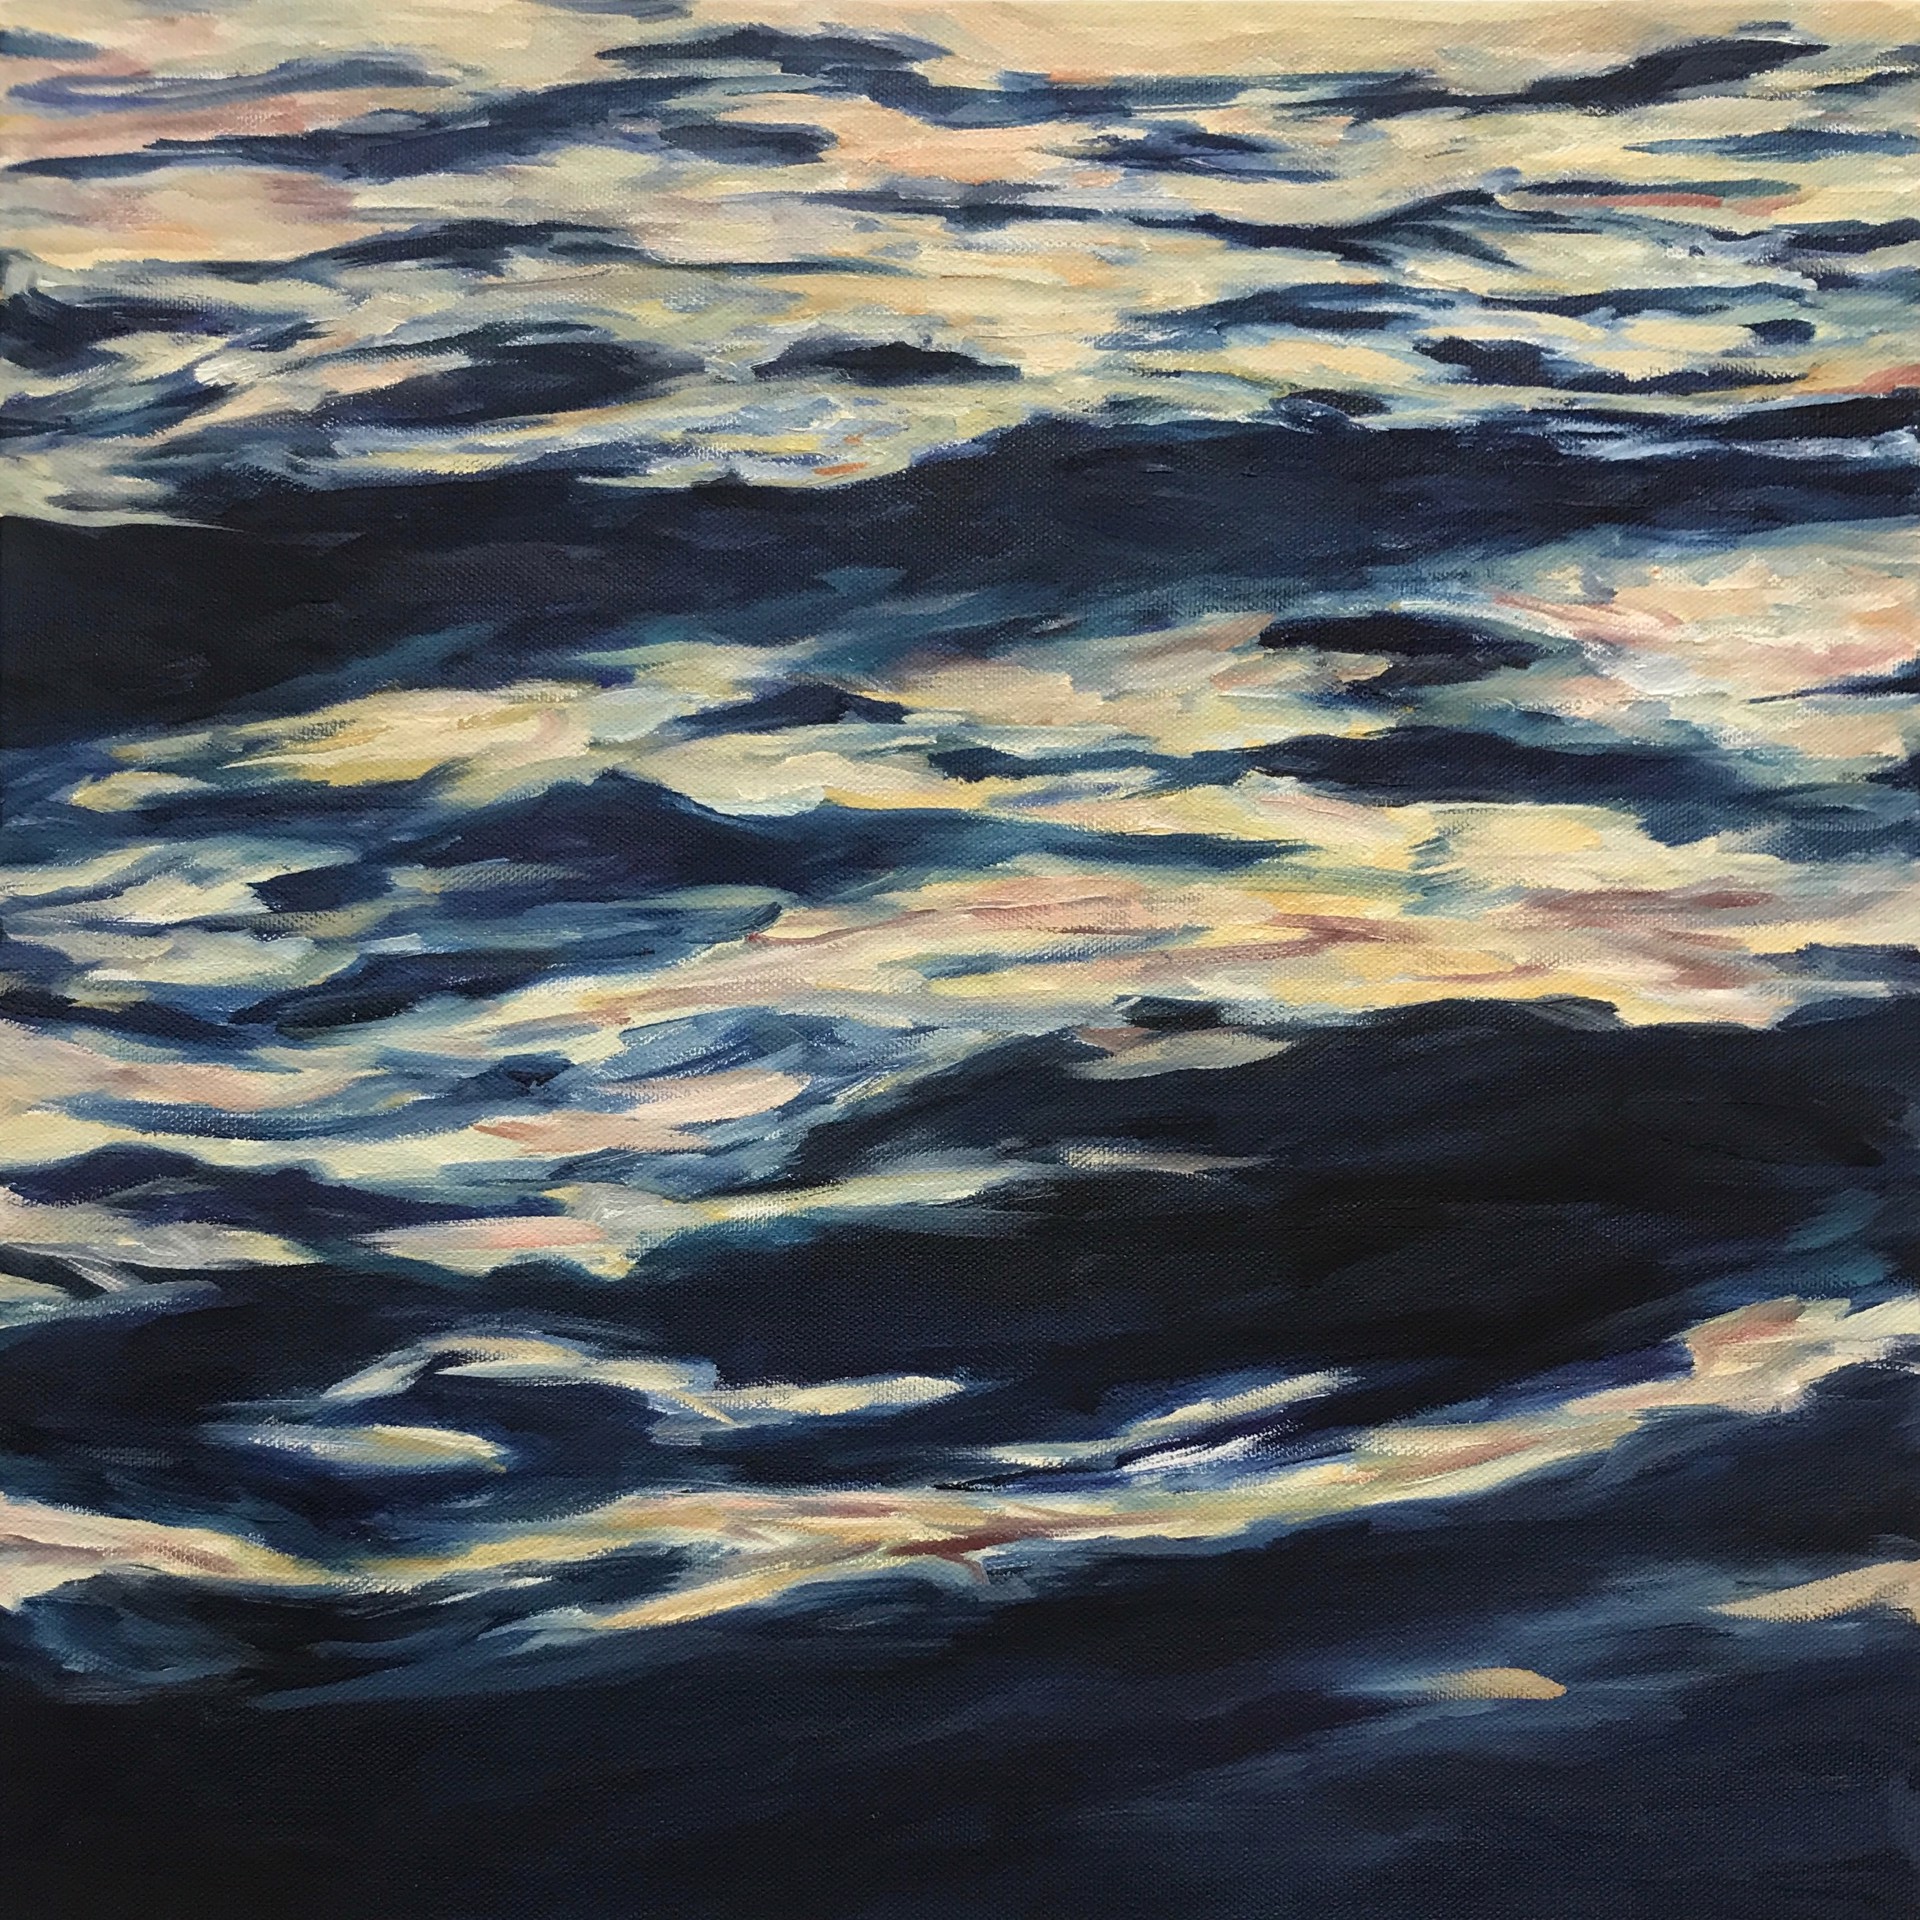 Lahaina Waves 11 by Valerie Eickmeier